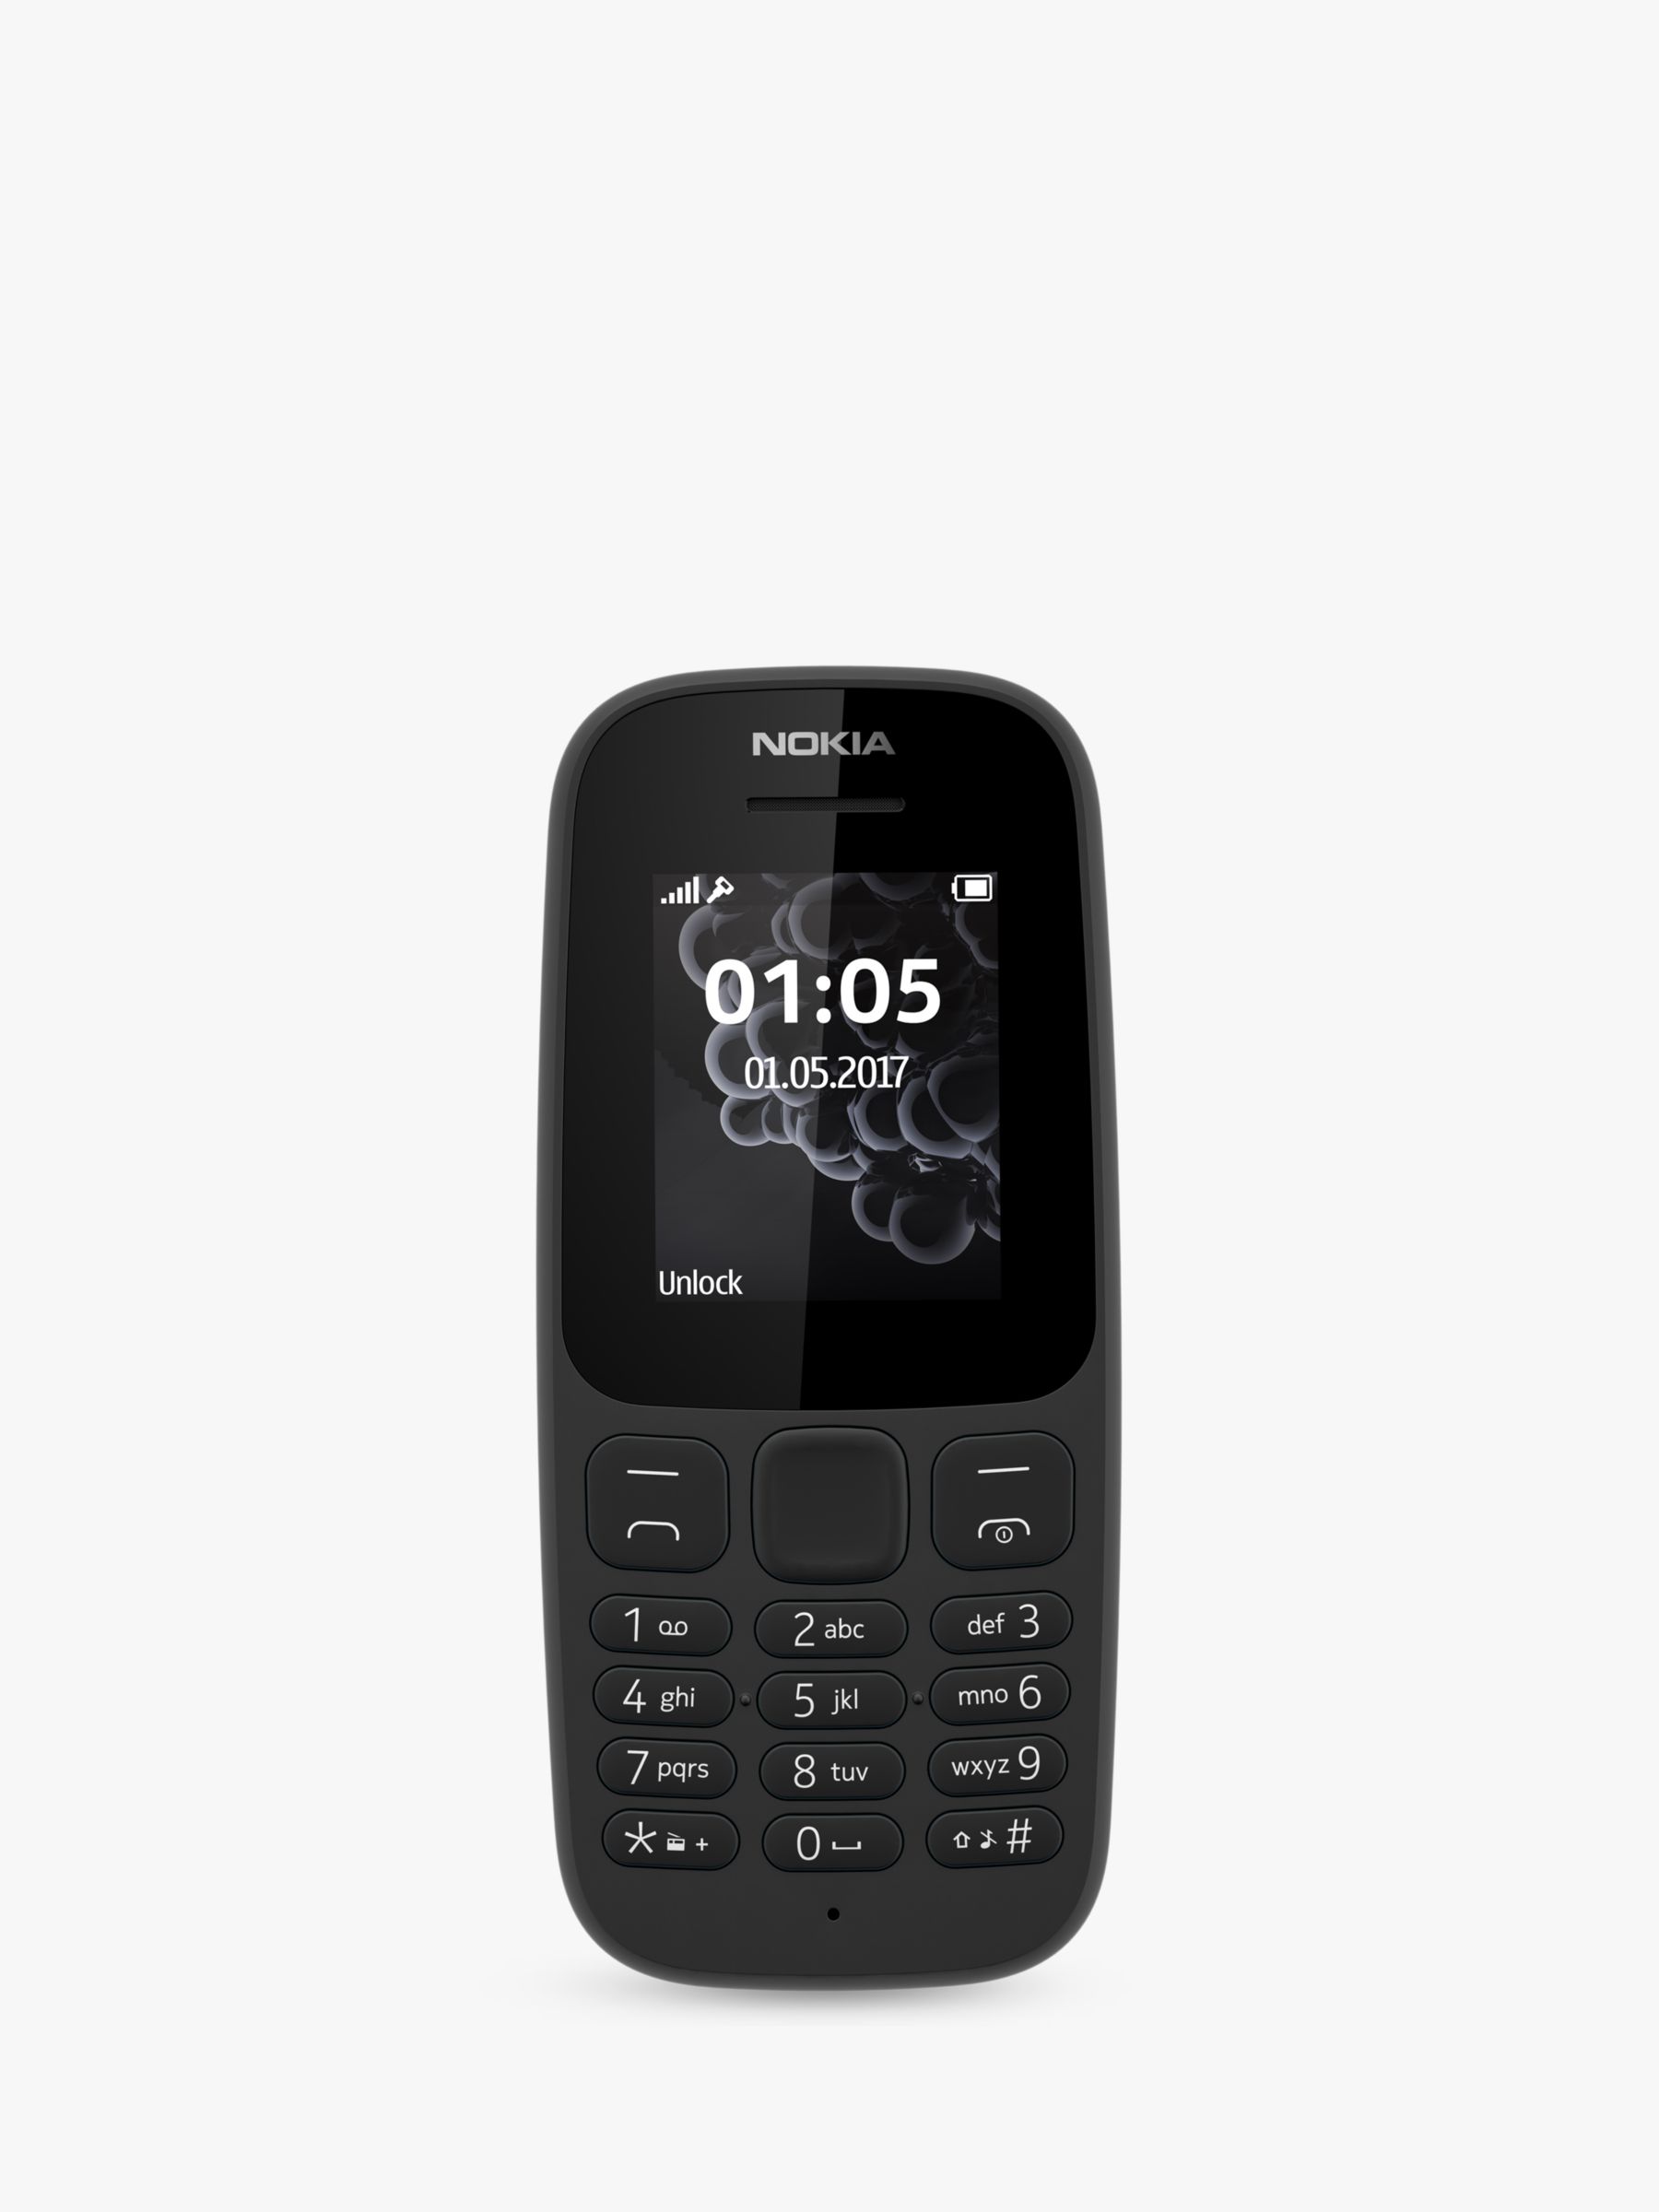 Nokia 105 Mobile Phone 1 8 4g Sim Free Black At John Lewis